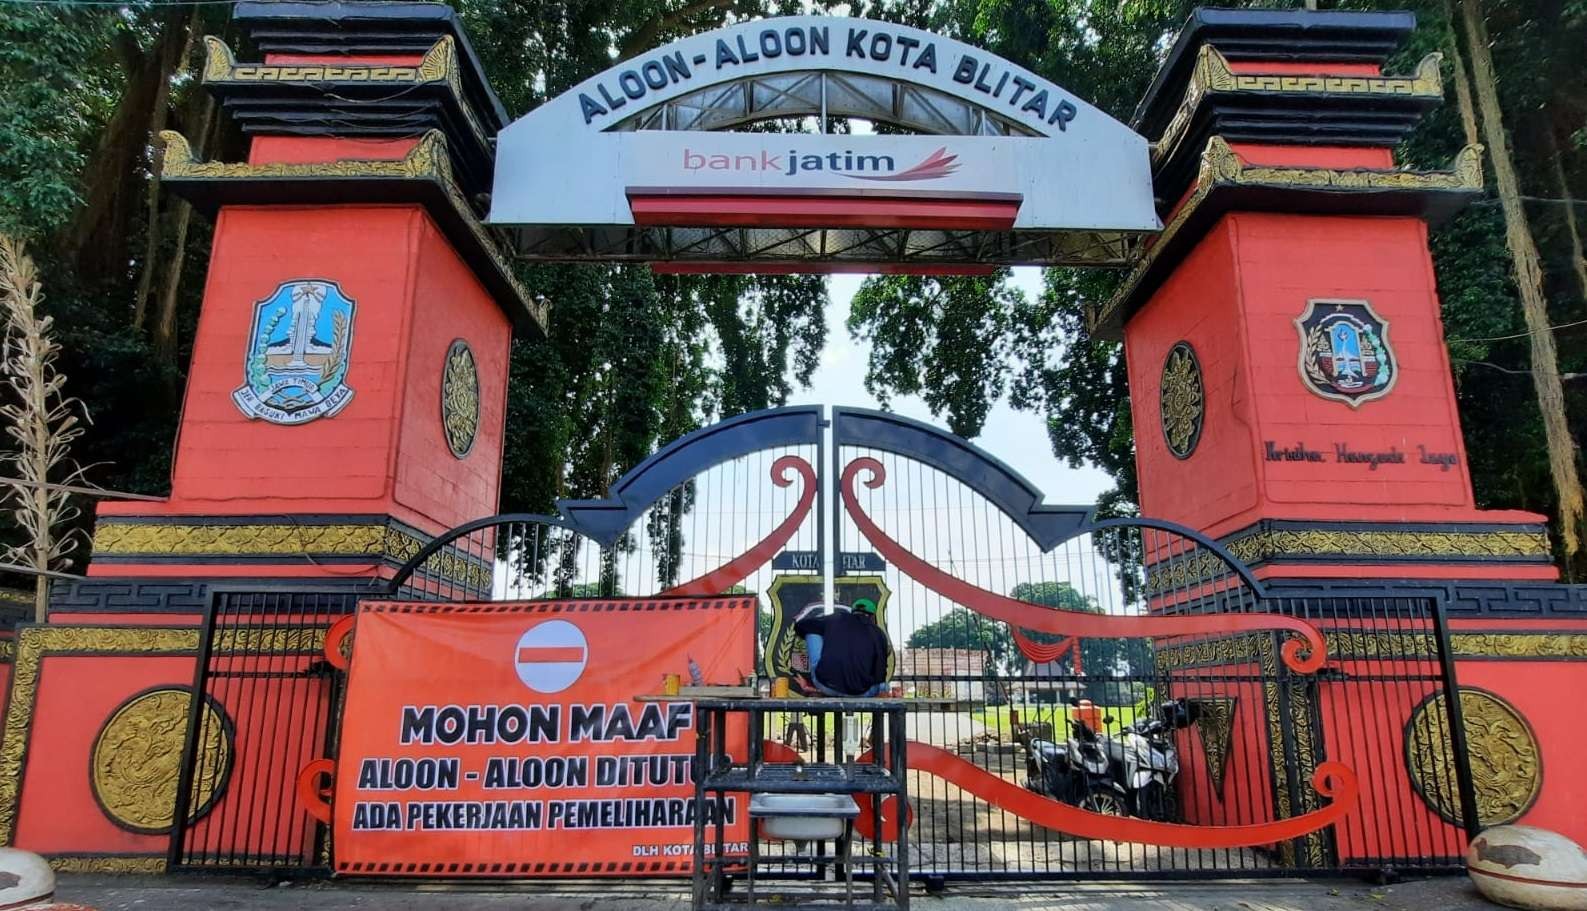 Pintu gerbang Aloon-aloon Kota Blitar ditutup. Ada pengerjaan pemeliharaan sarana dan prasarana. (Foto: blitarkota.go.id)